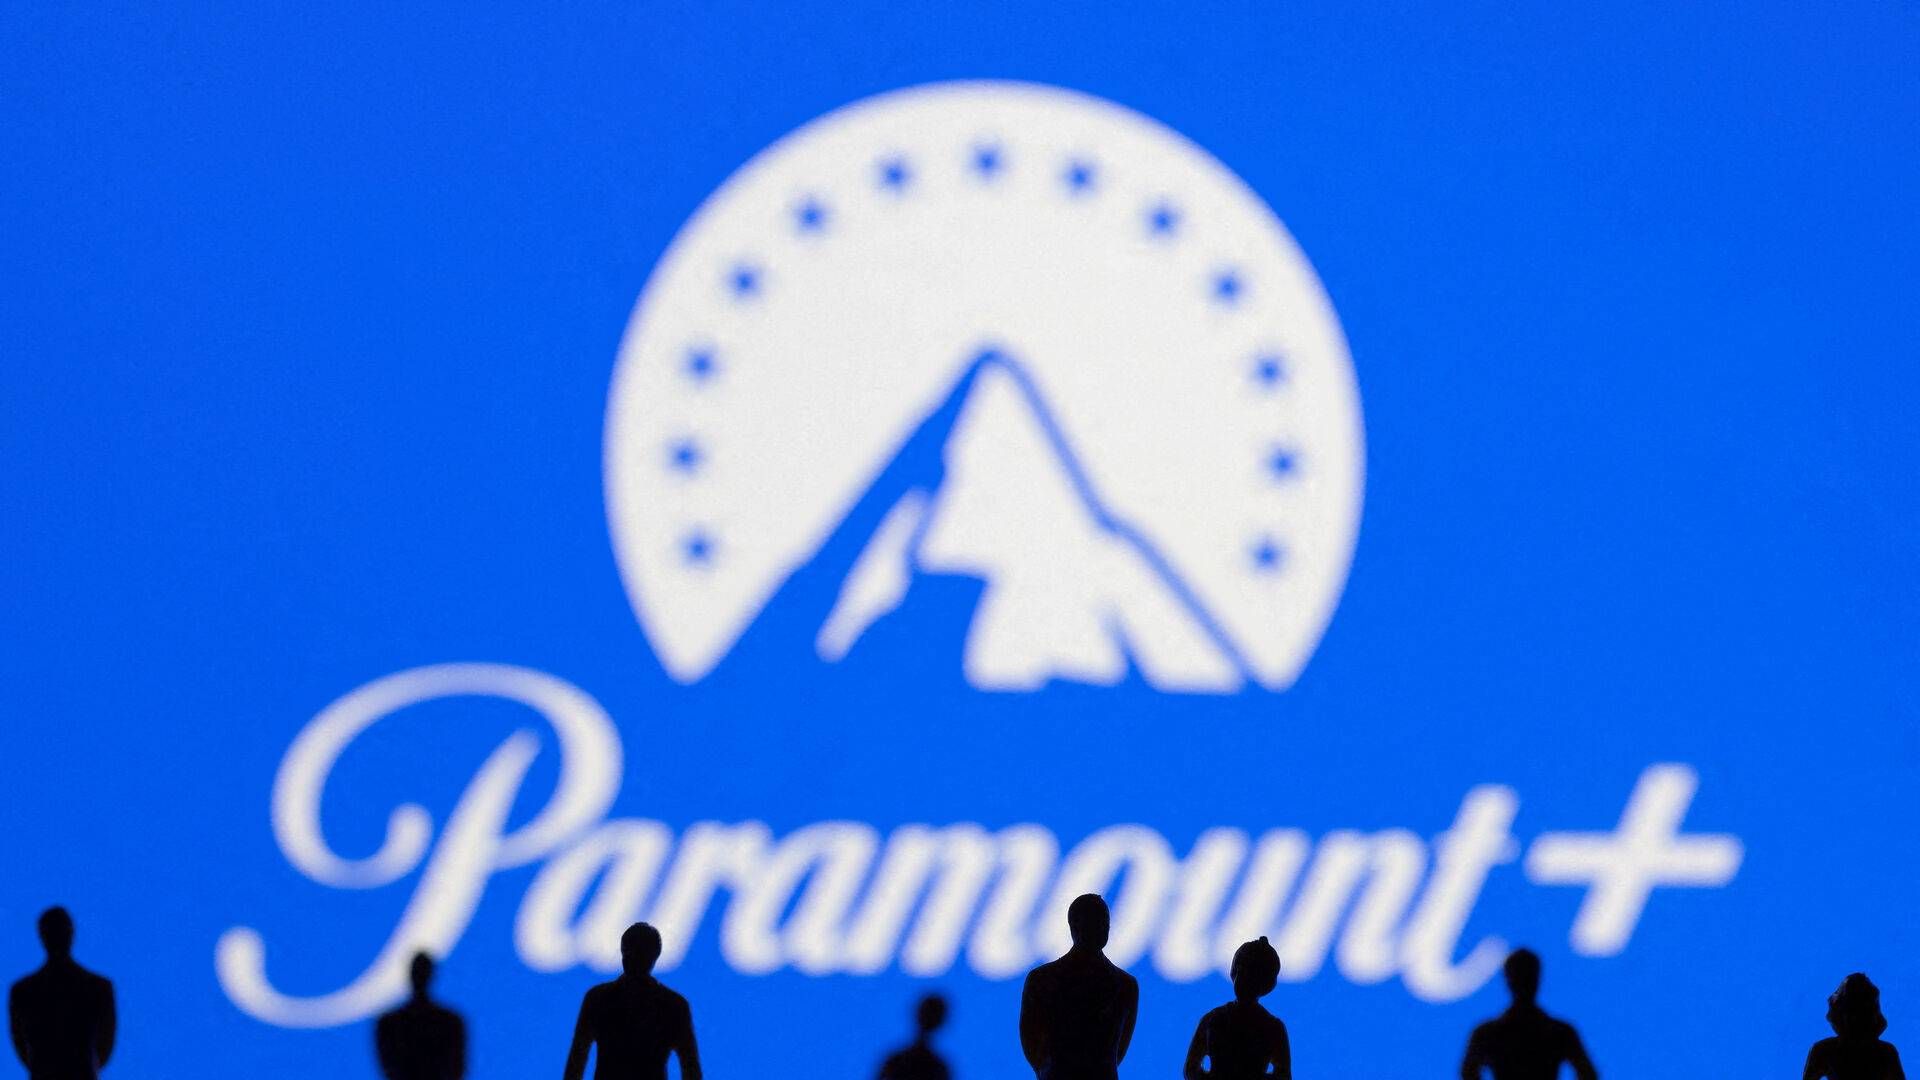 Rygter om overtagelsesbud og frasalg af tv-forretninger giver Paramount opmærksomhed tirsdag. | Foto: Dado Ruvic/Reuters/Ritzau Scanpix